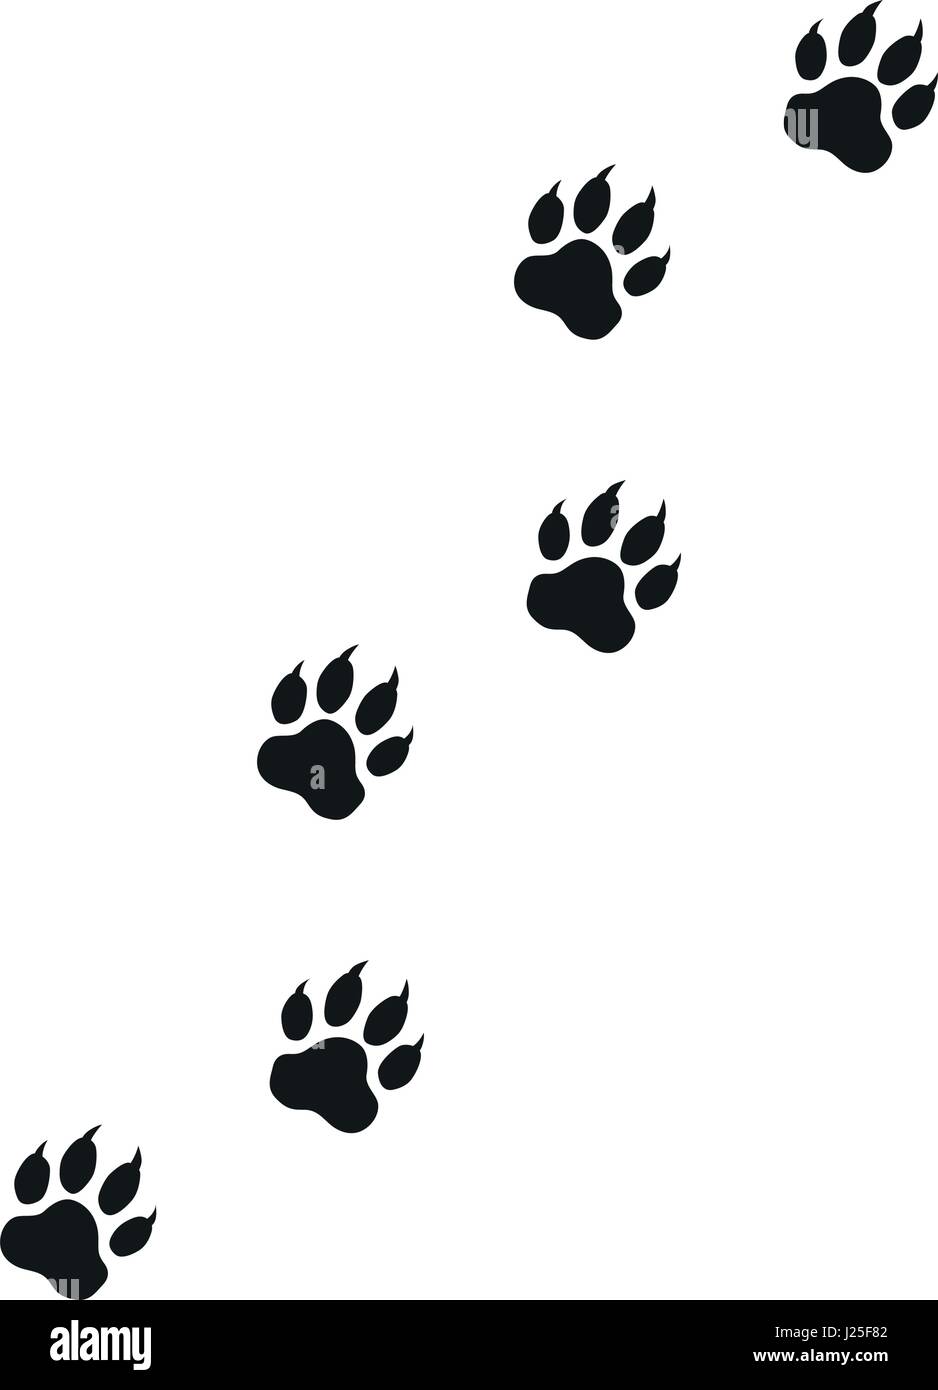 Ilustración de las Huellas de gato para el uso creativo de diseño gráfico  Imagen Vector de stock - Alamy